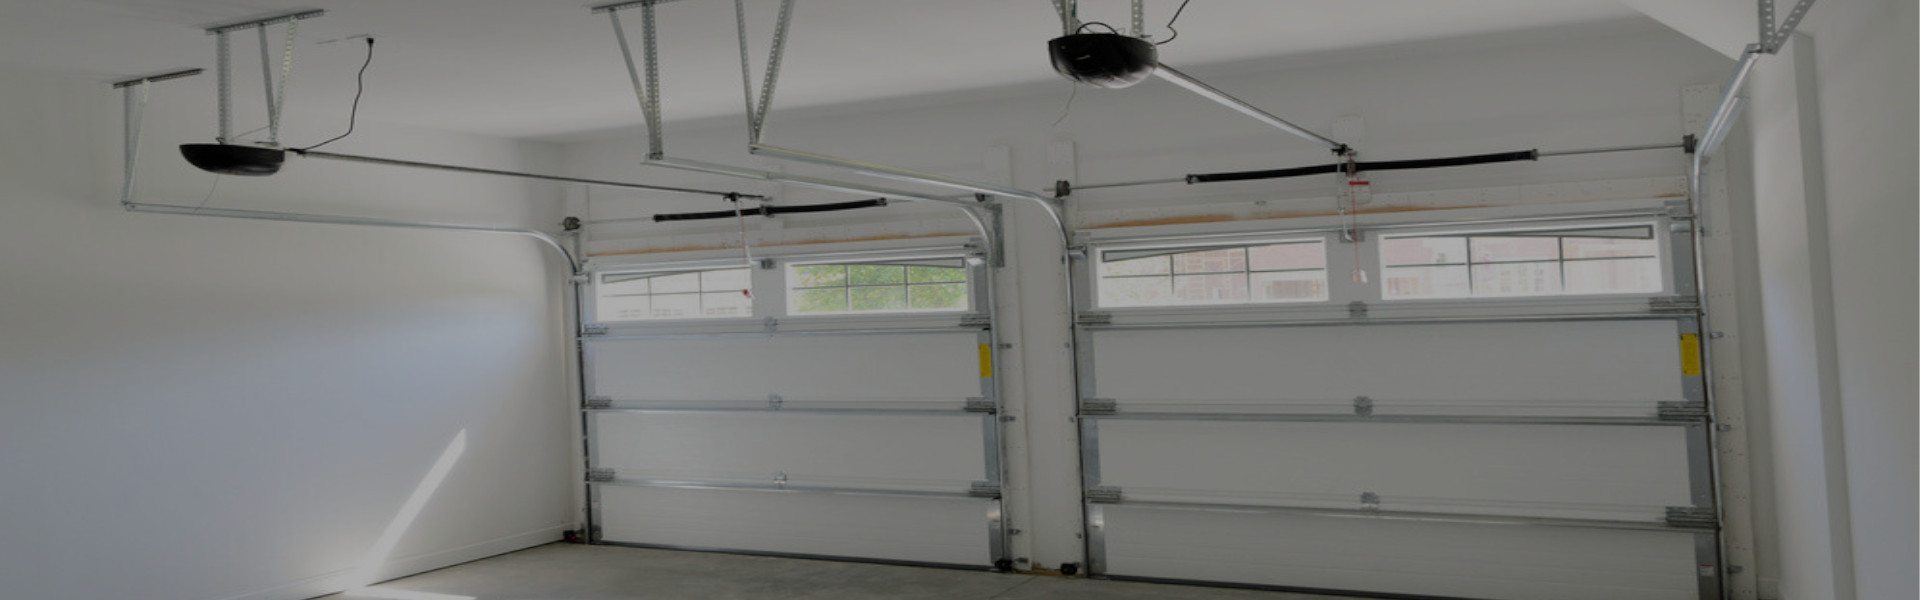 Slider Garage Door Repair, Glaziers in Downside, Cobham, Stoke d'Abernon, KT11